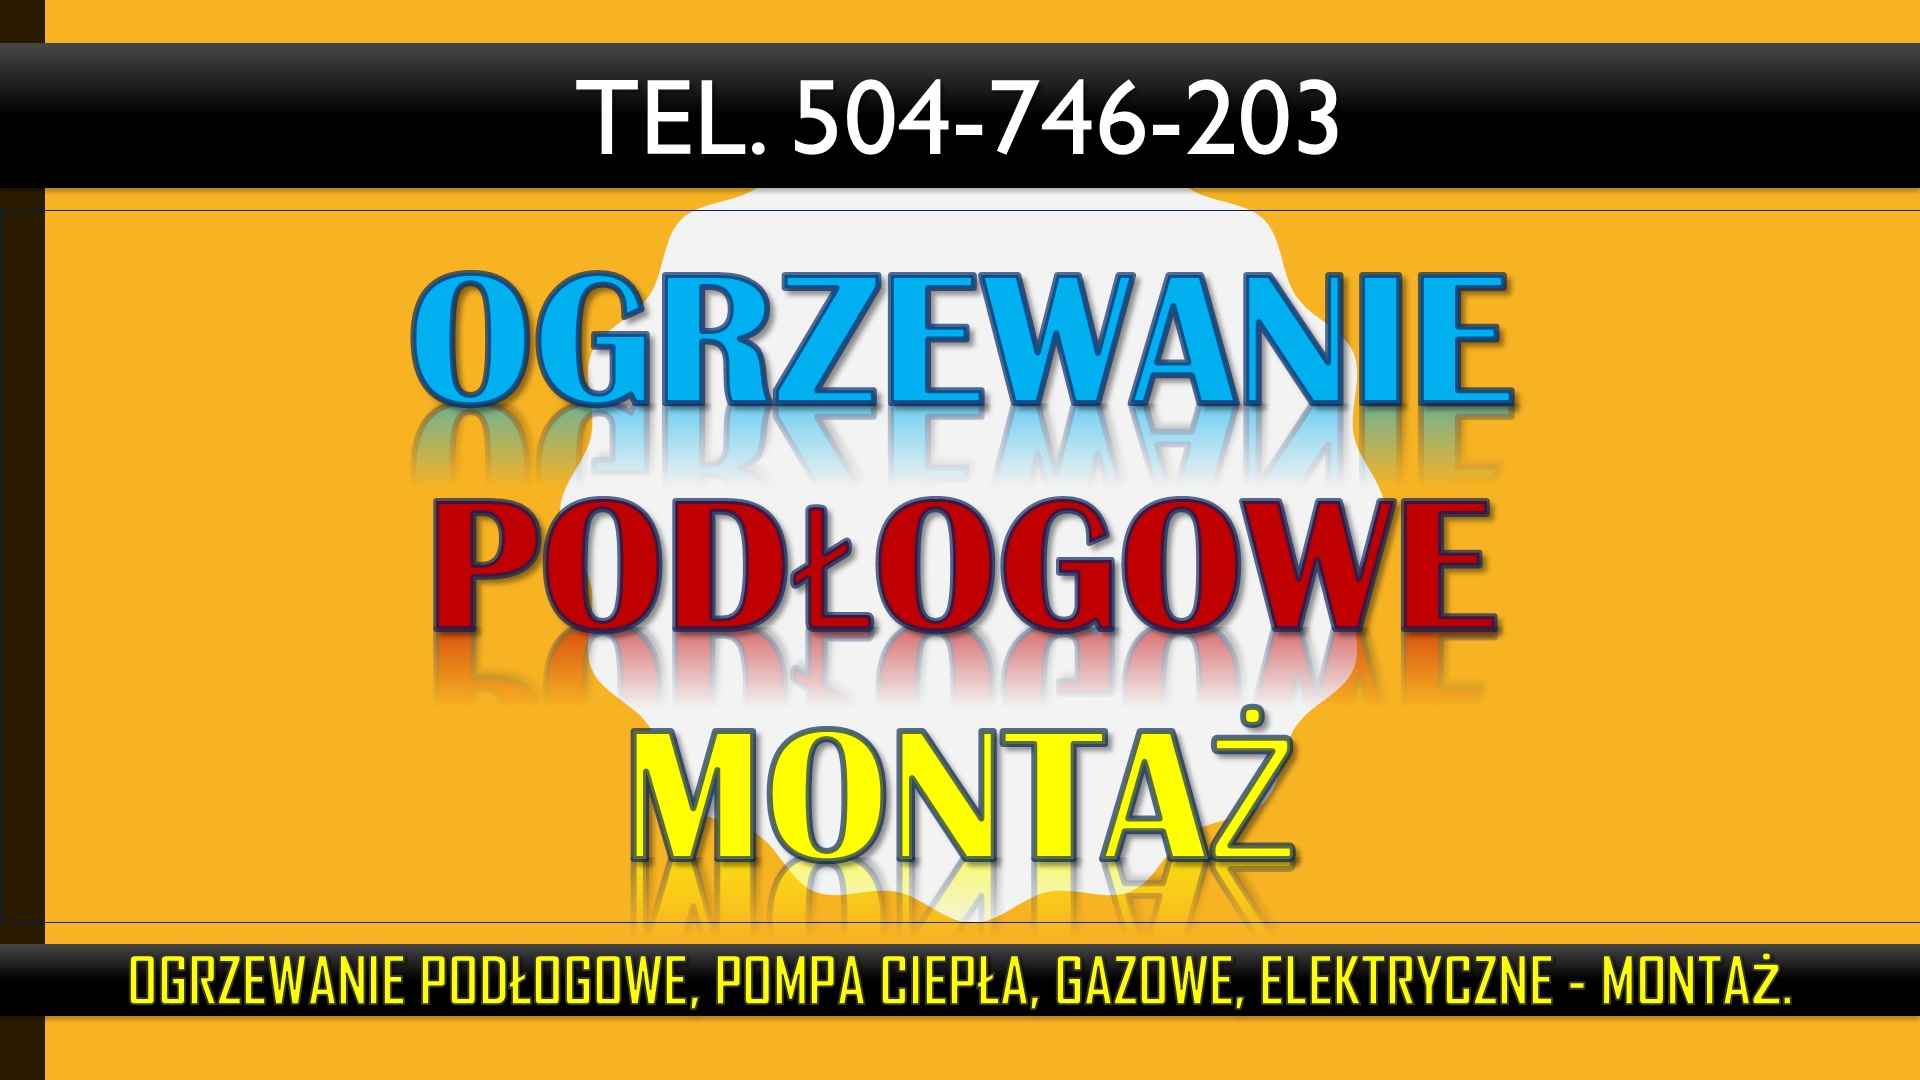 Ogrzewanie podłogowe, montaż tel. 504-746-203, Wrocław, cena montażu. Psie Pole - zdjęcie 3